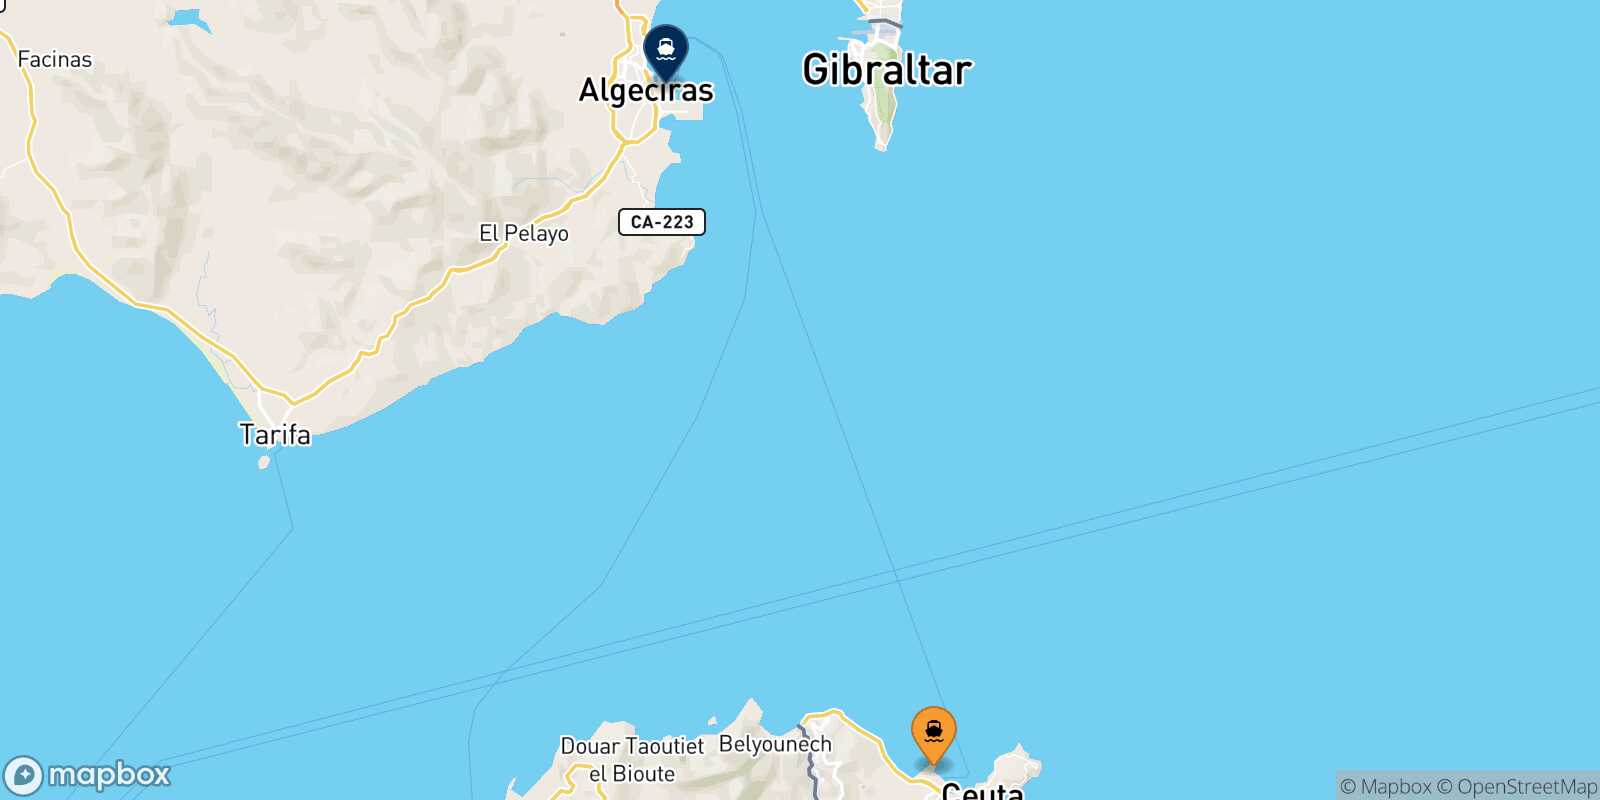 Mappa dei porti collegati con  Algeciras